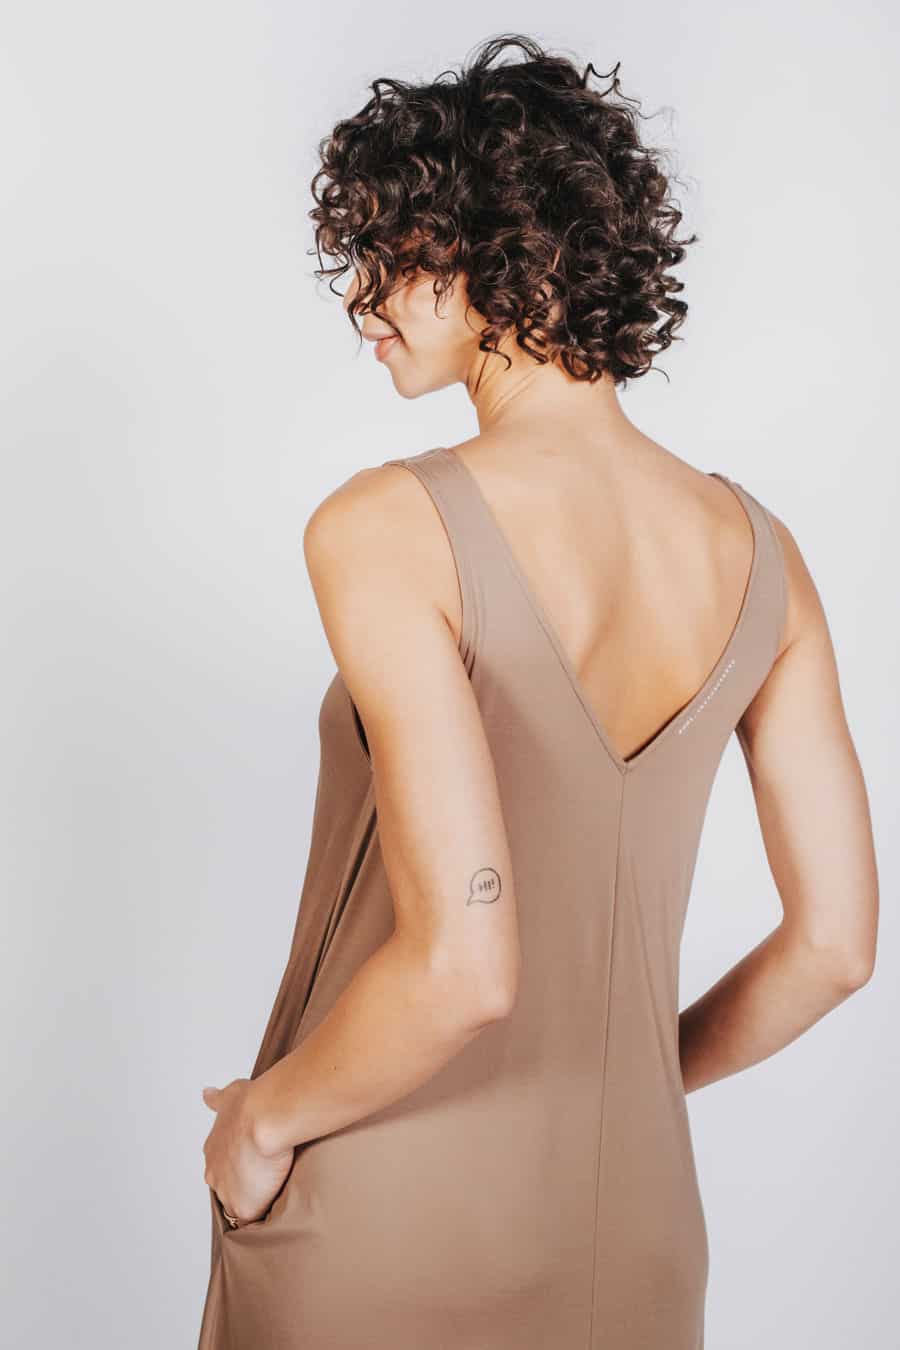 Deep White Black Modell SASHA langes Sommer Kleid beige, ärmelloses Sommerkleid mit V-Ausschnitt, Schriftzug 6001 Abstract Clay, Ansicht seitlich von hinten